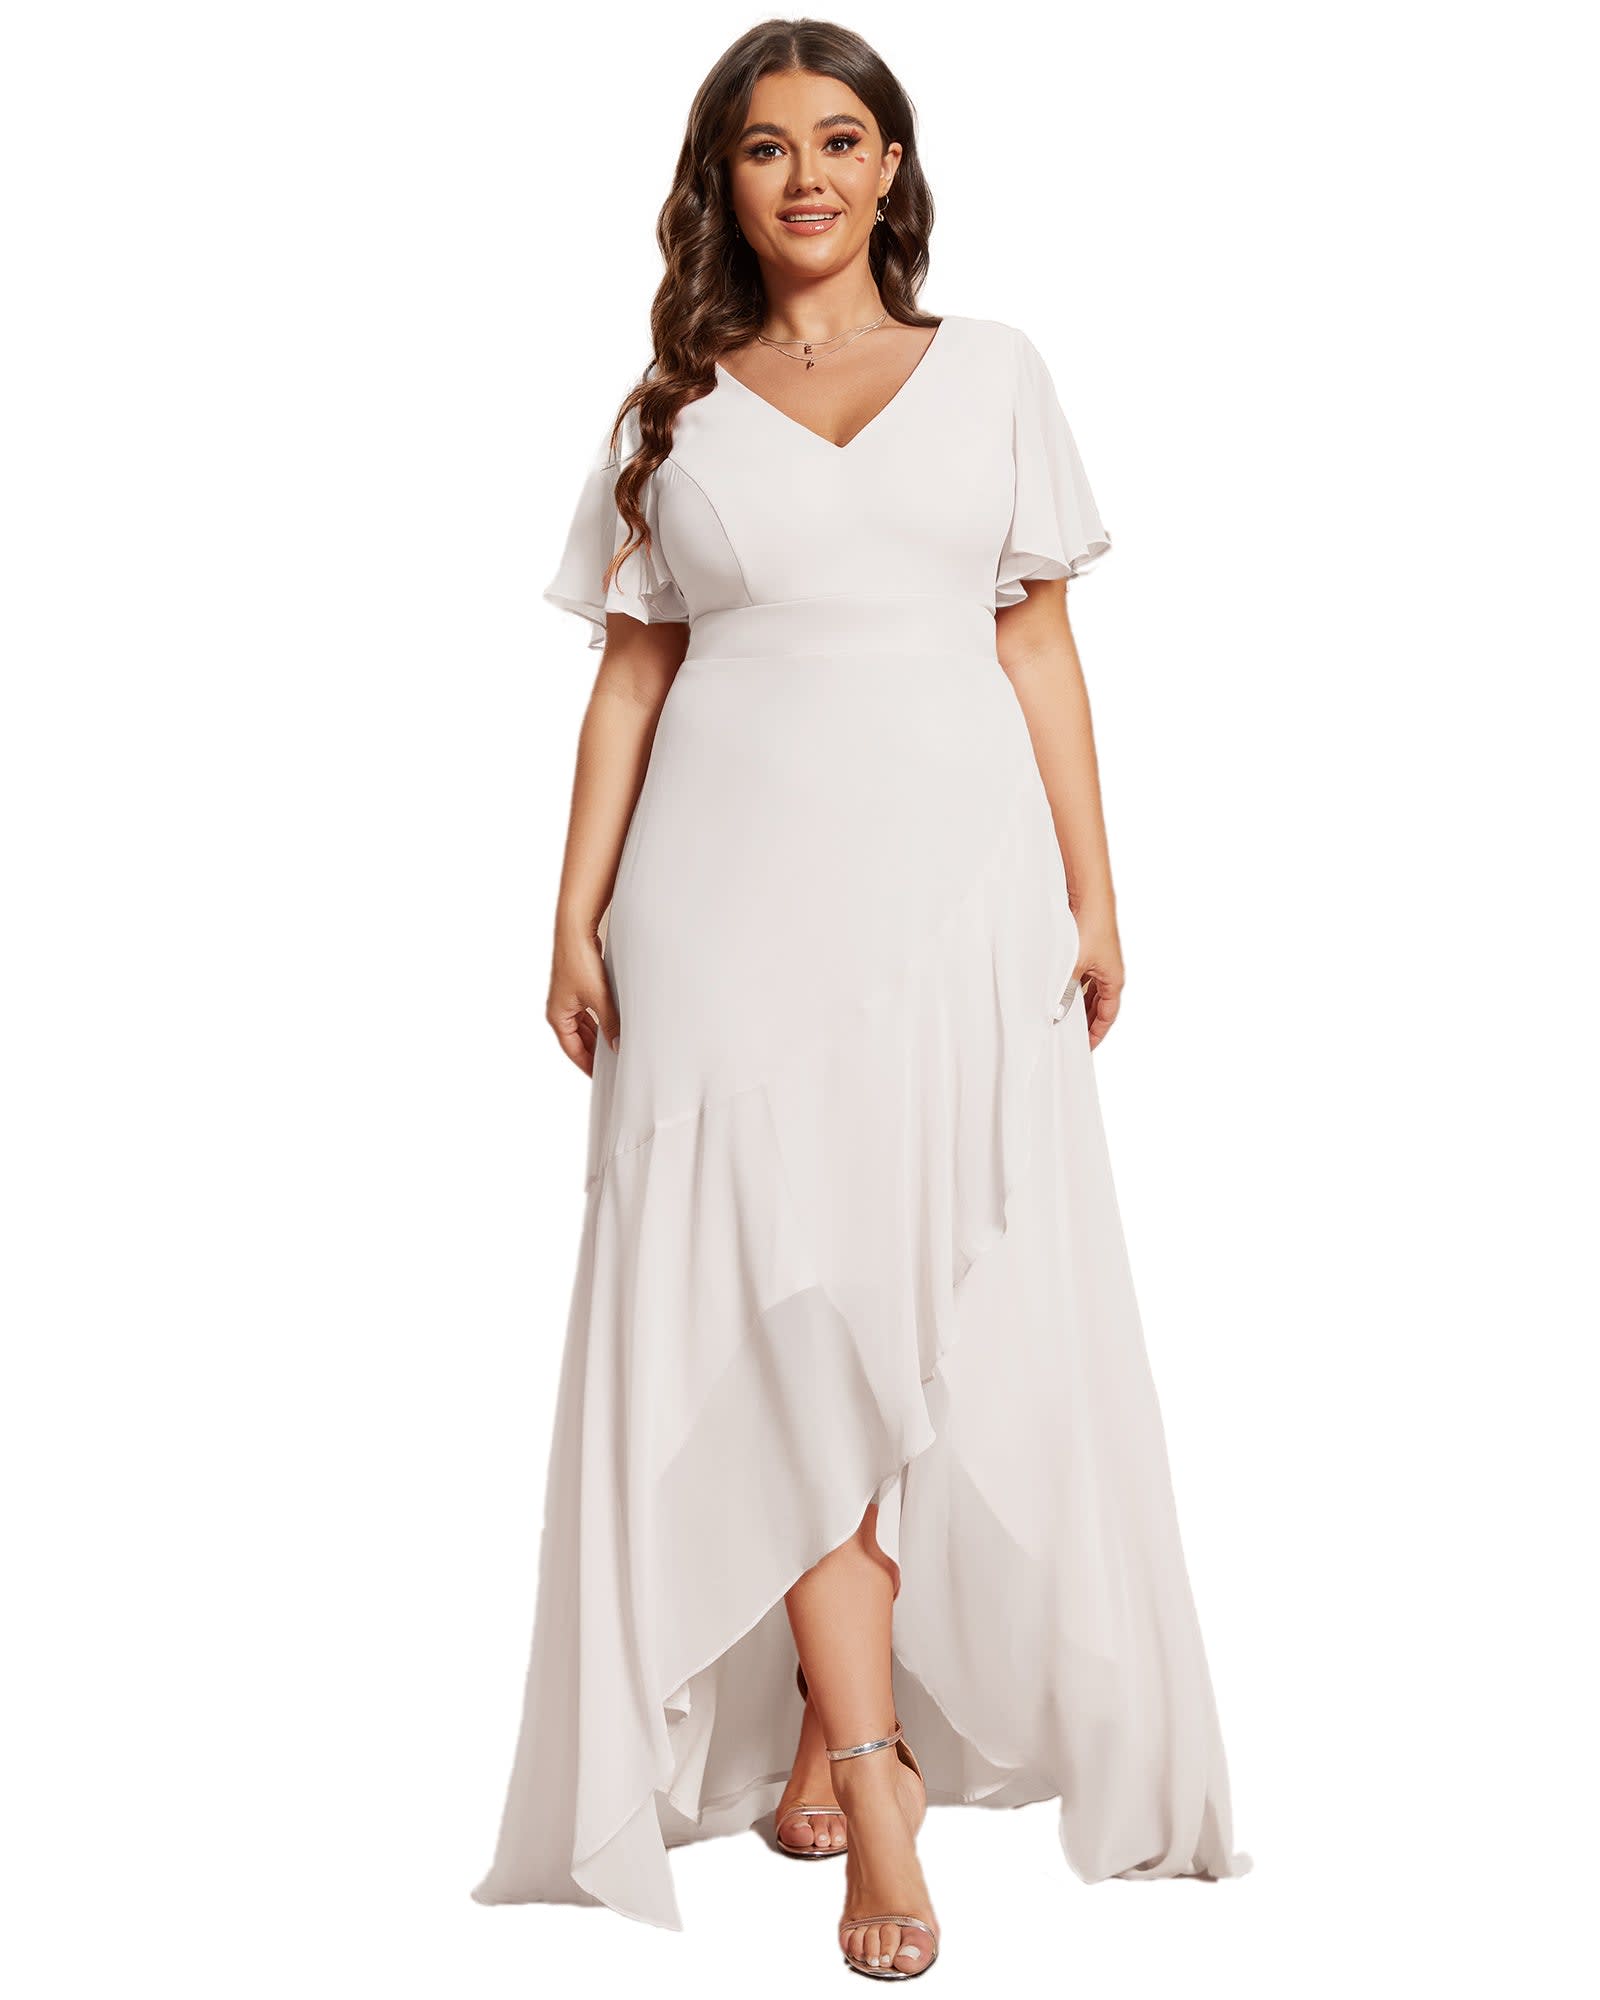 Bridesmaid White Dresses